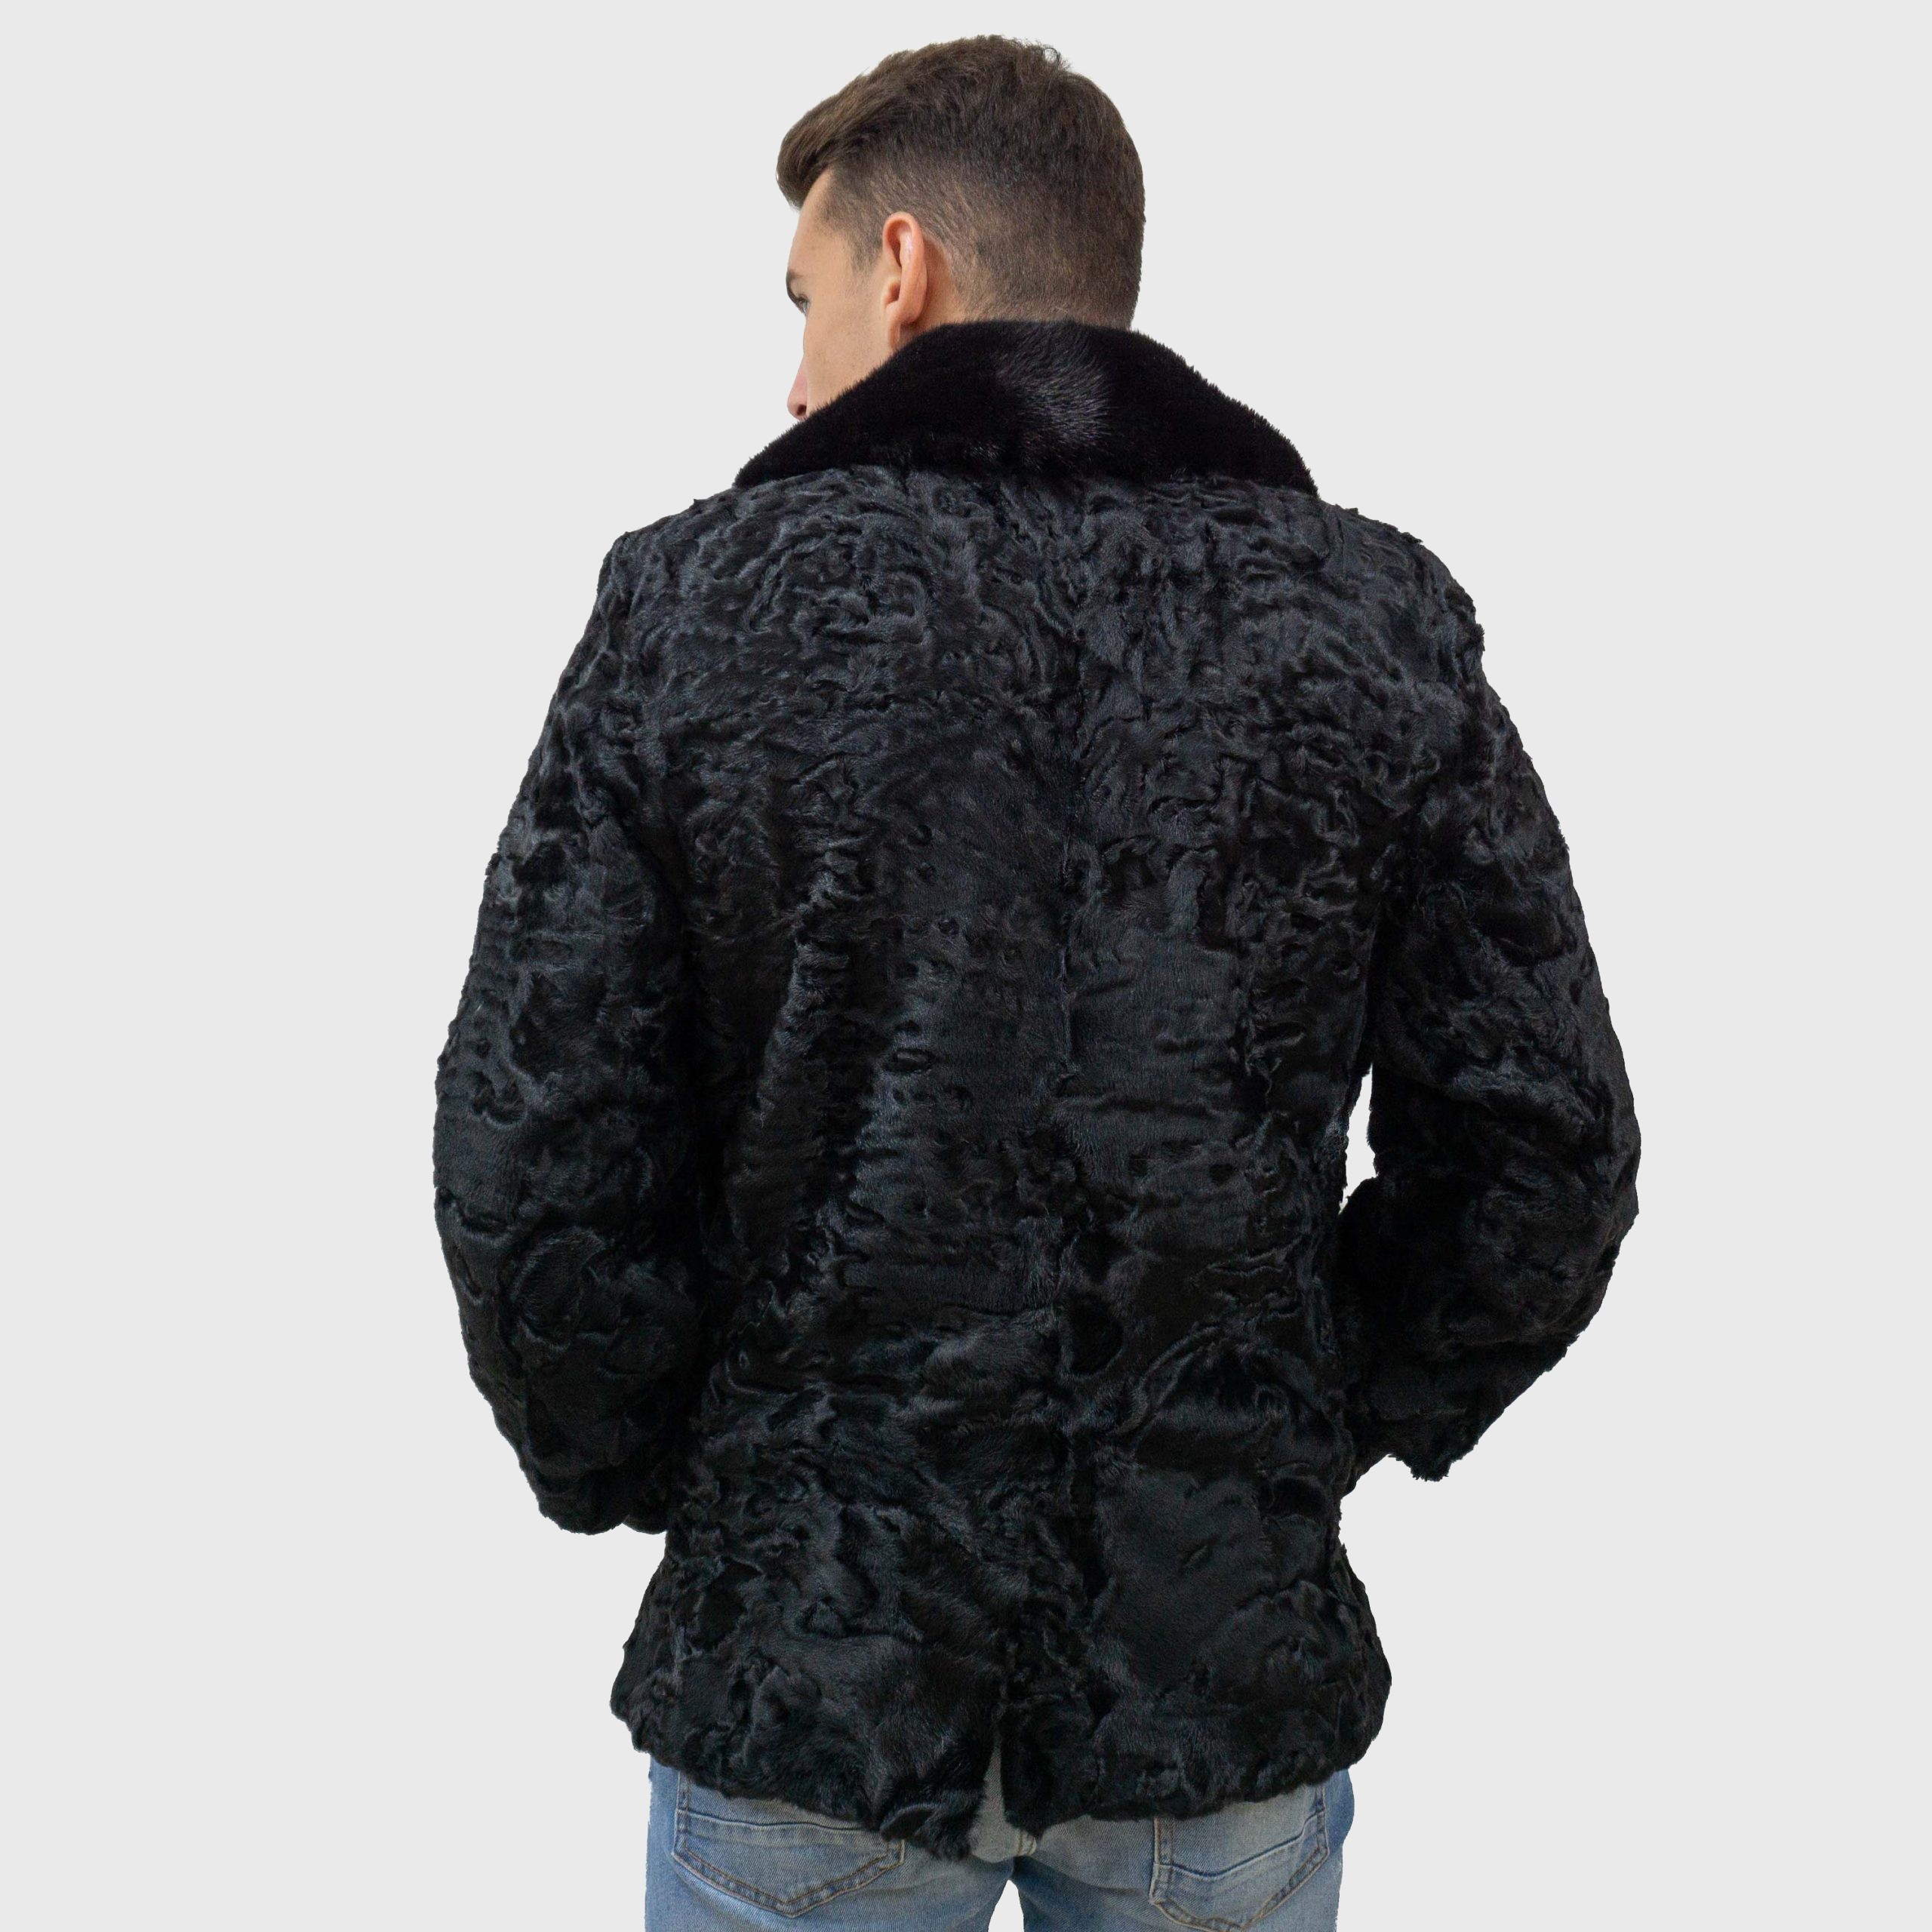 Black astrakhan fur jacket with mink fur collar